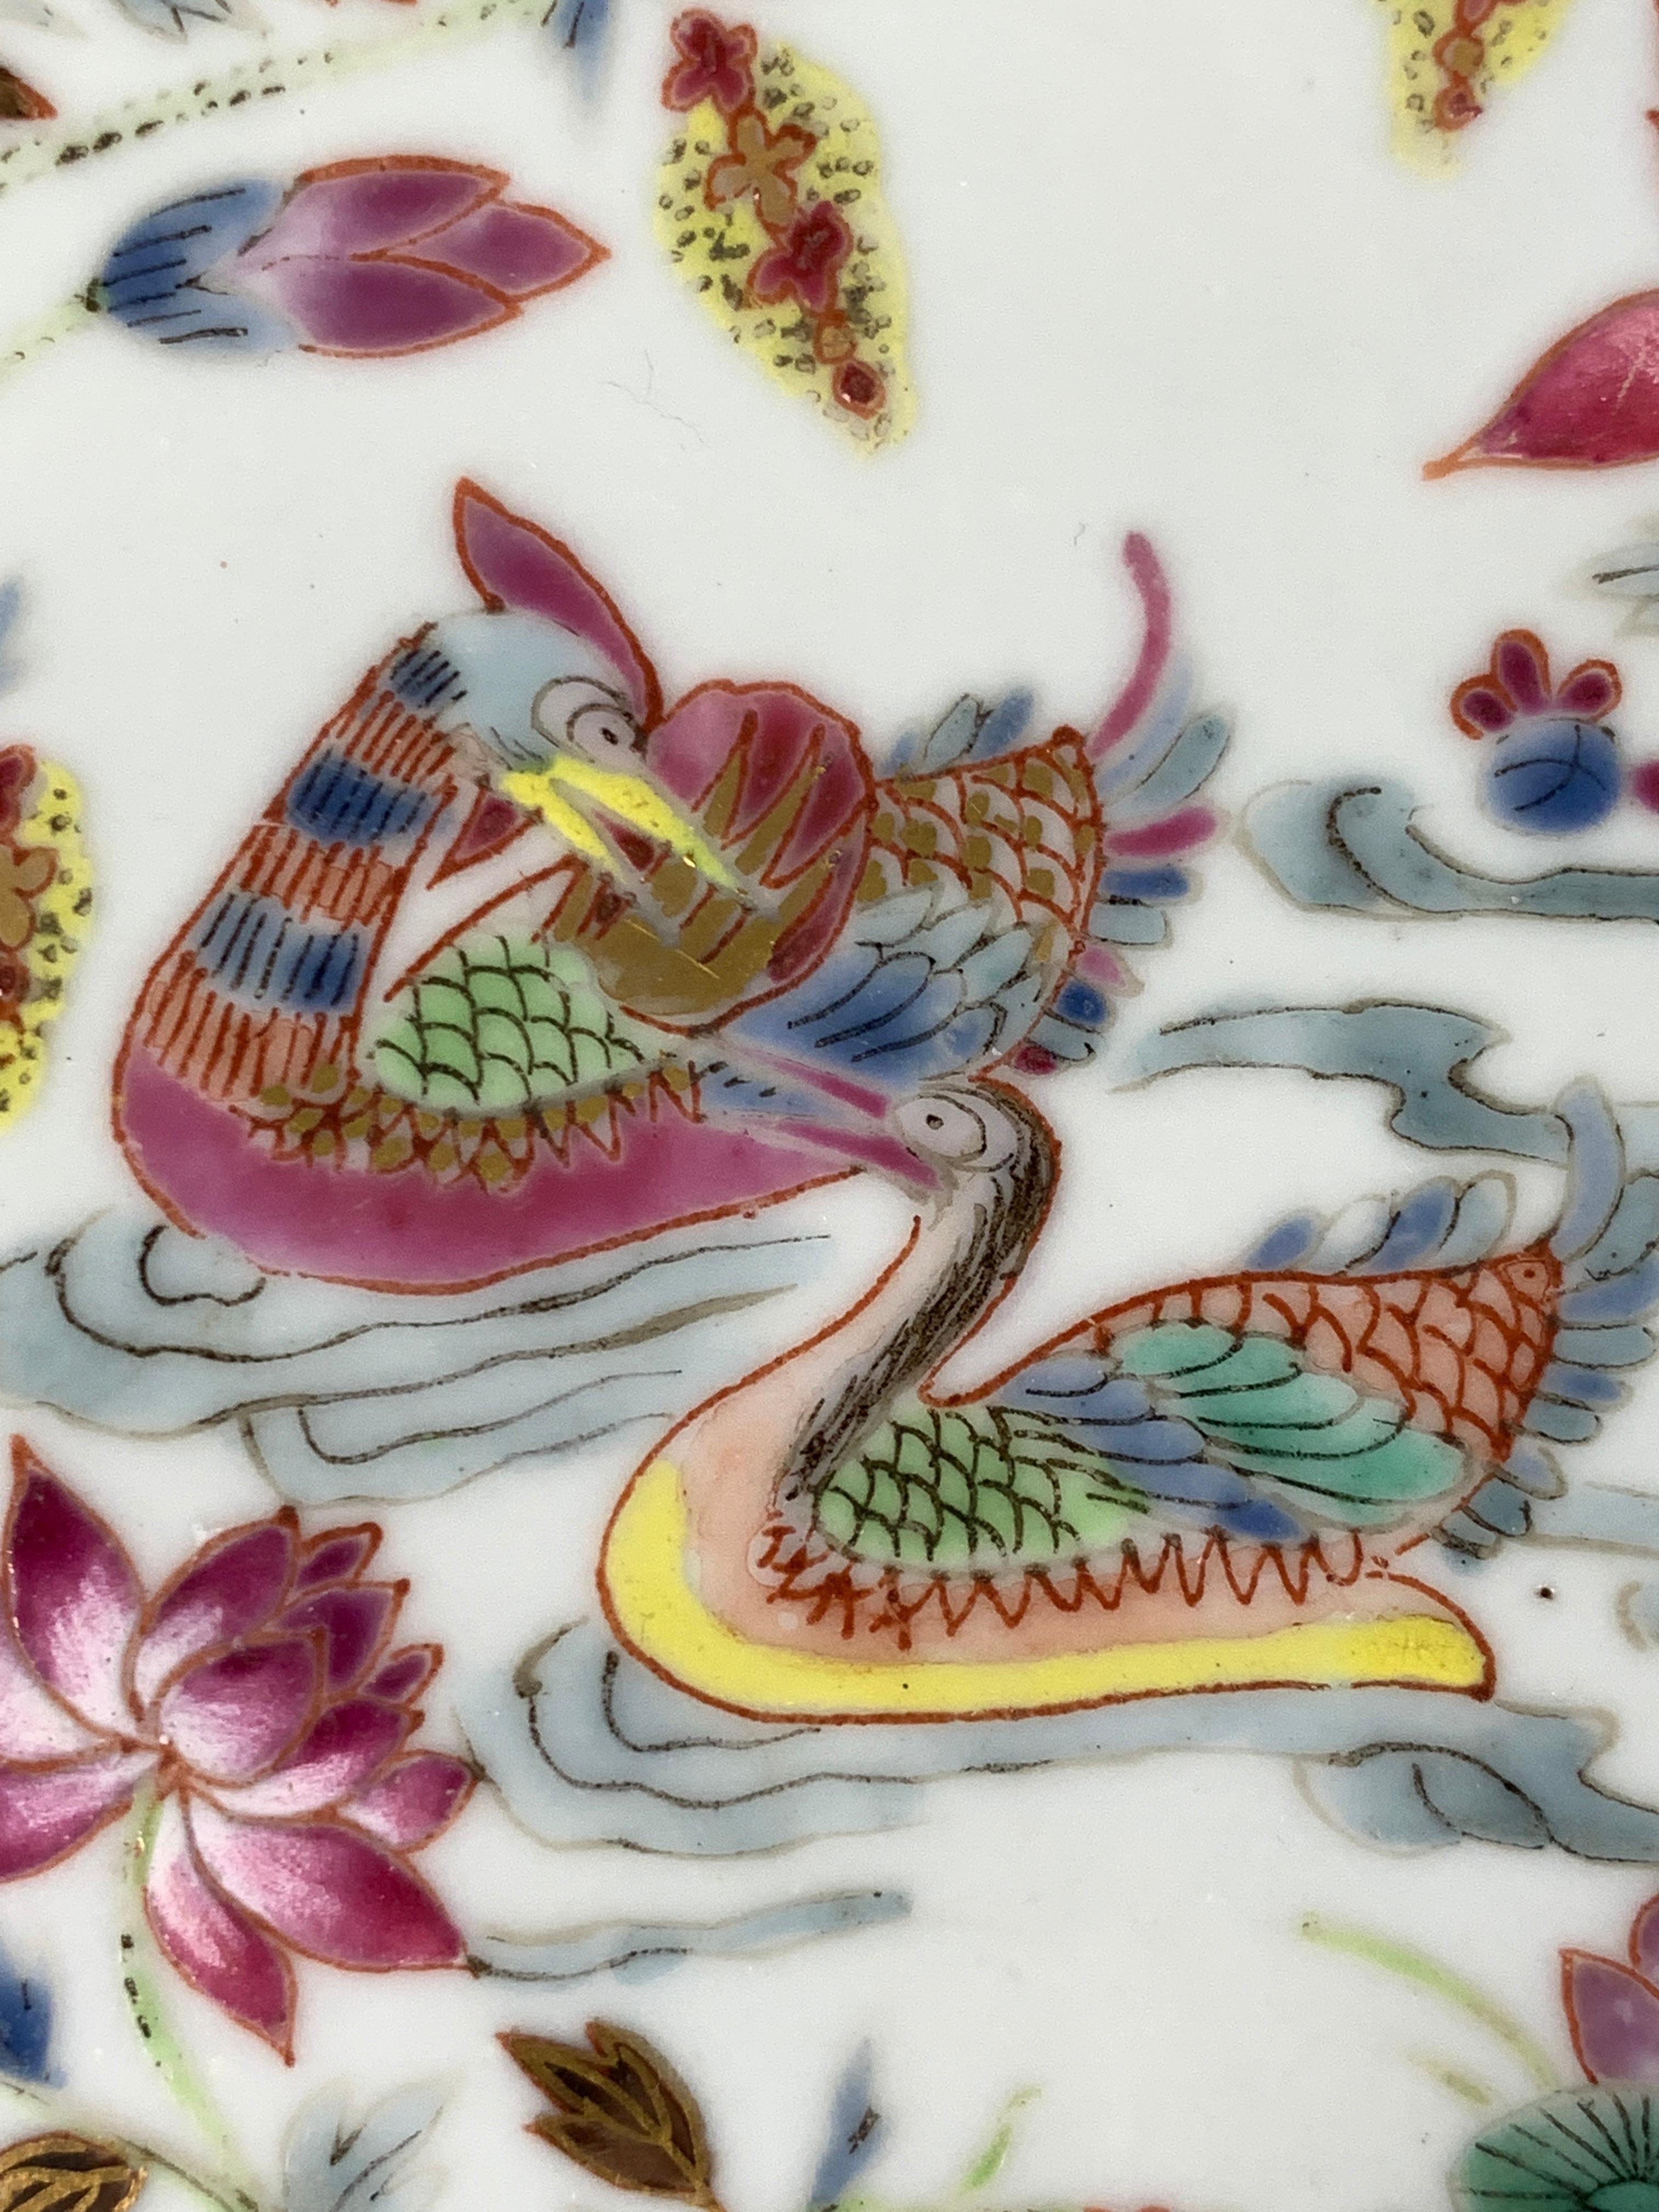 Réalisée au début du XIXe siècle, vers 1820, cette assiette Famille Rose est peinte à la main de huit immortels taoïstes, certains chevauchant de fabuleuses bêtes mythiques. La bordure est également décorée de motifs floraux. 
Un motif rose en nid